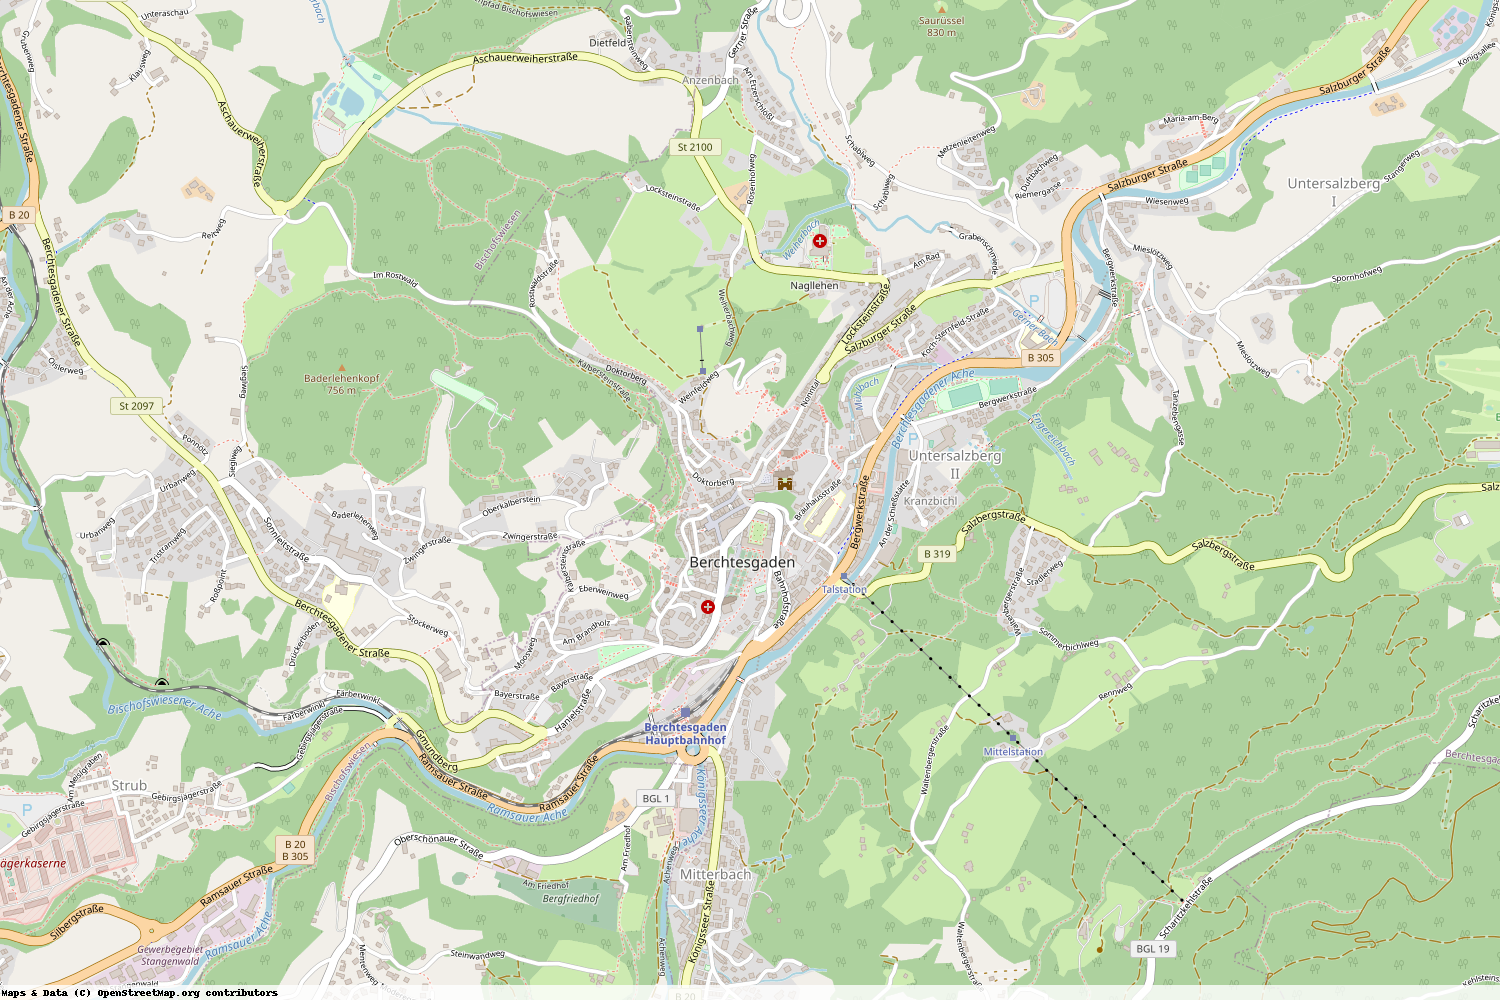 Ist gerade Stromausfall in Bayern - Berchtesgadener Land - Berchtesgaden?